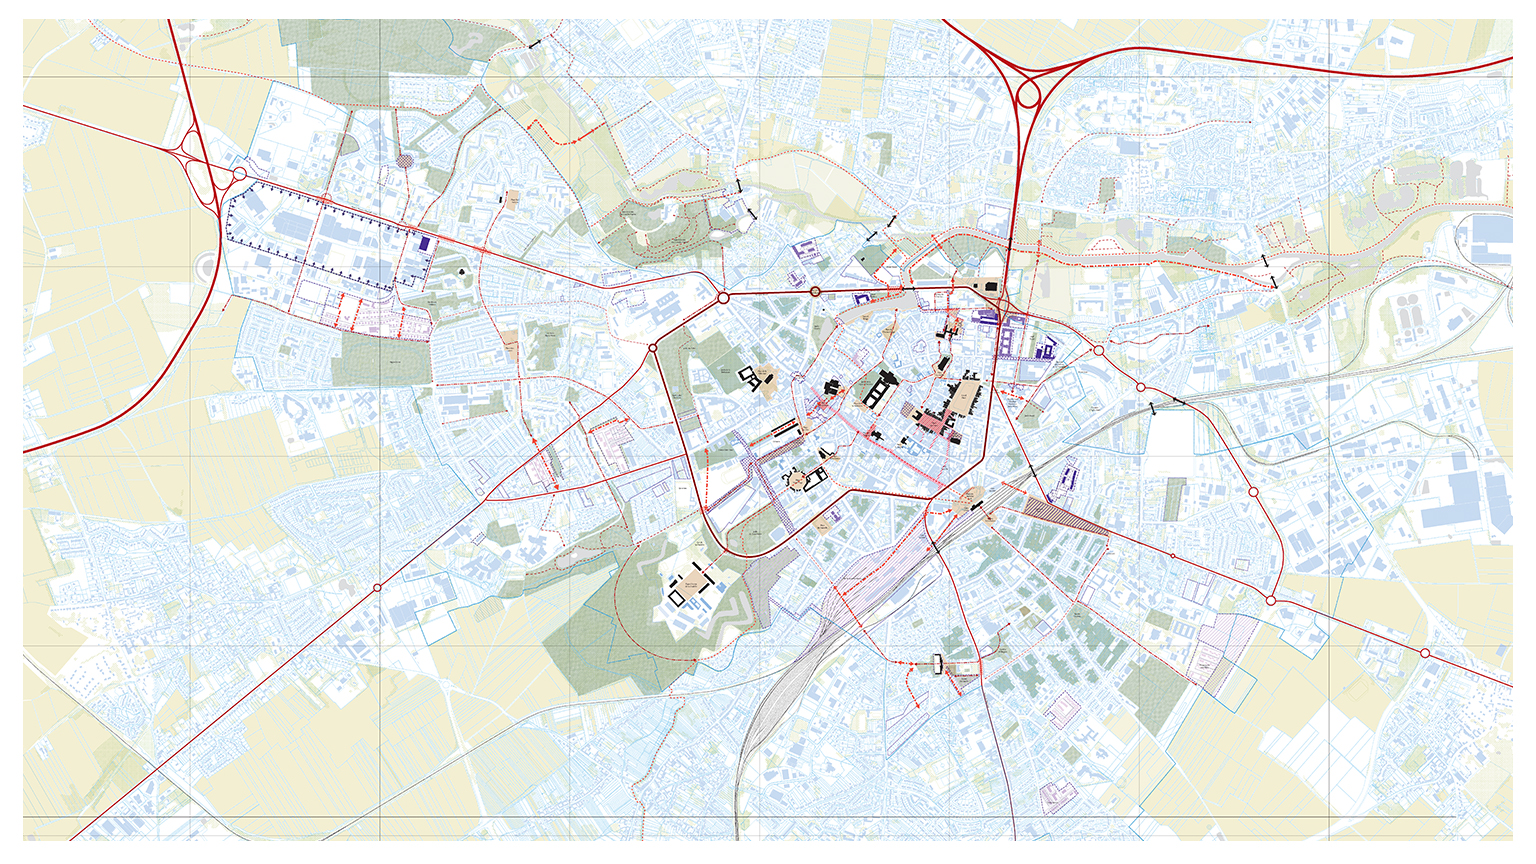 Un plan coordonné pour changer l’usage et l’image de la ville d’Arras